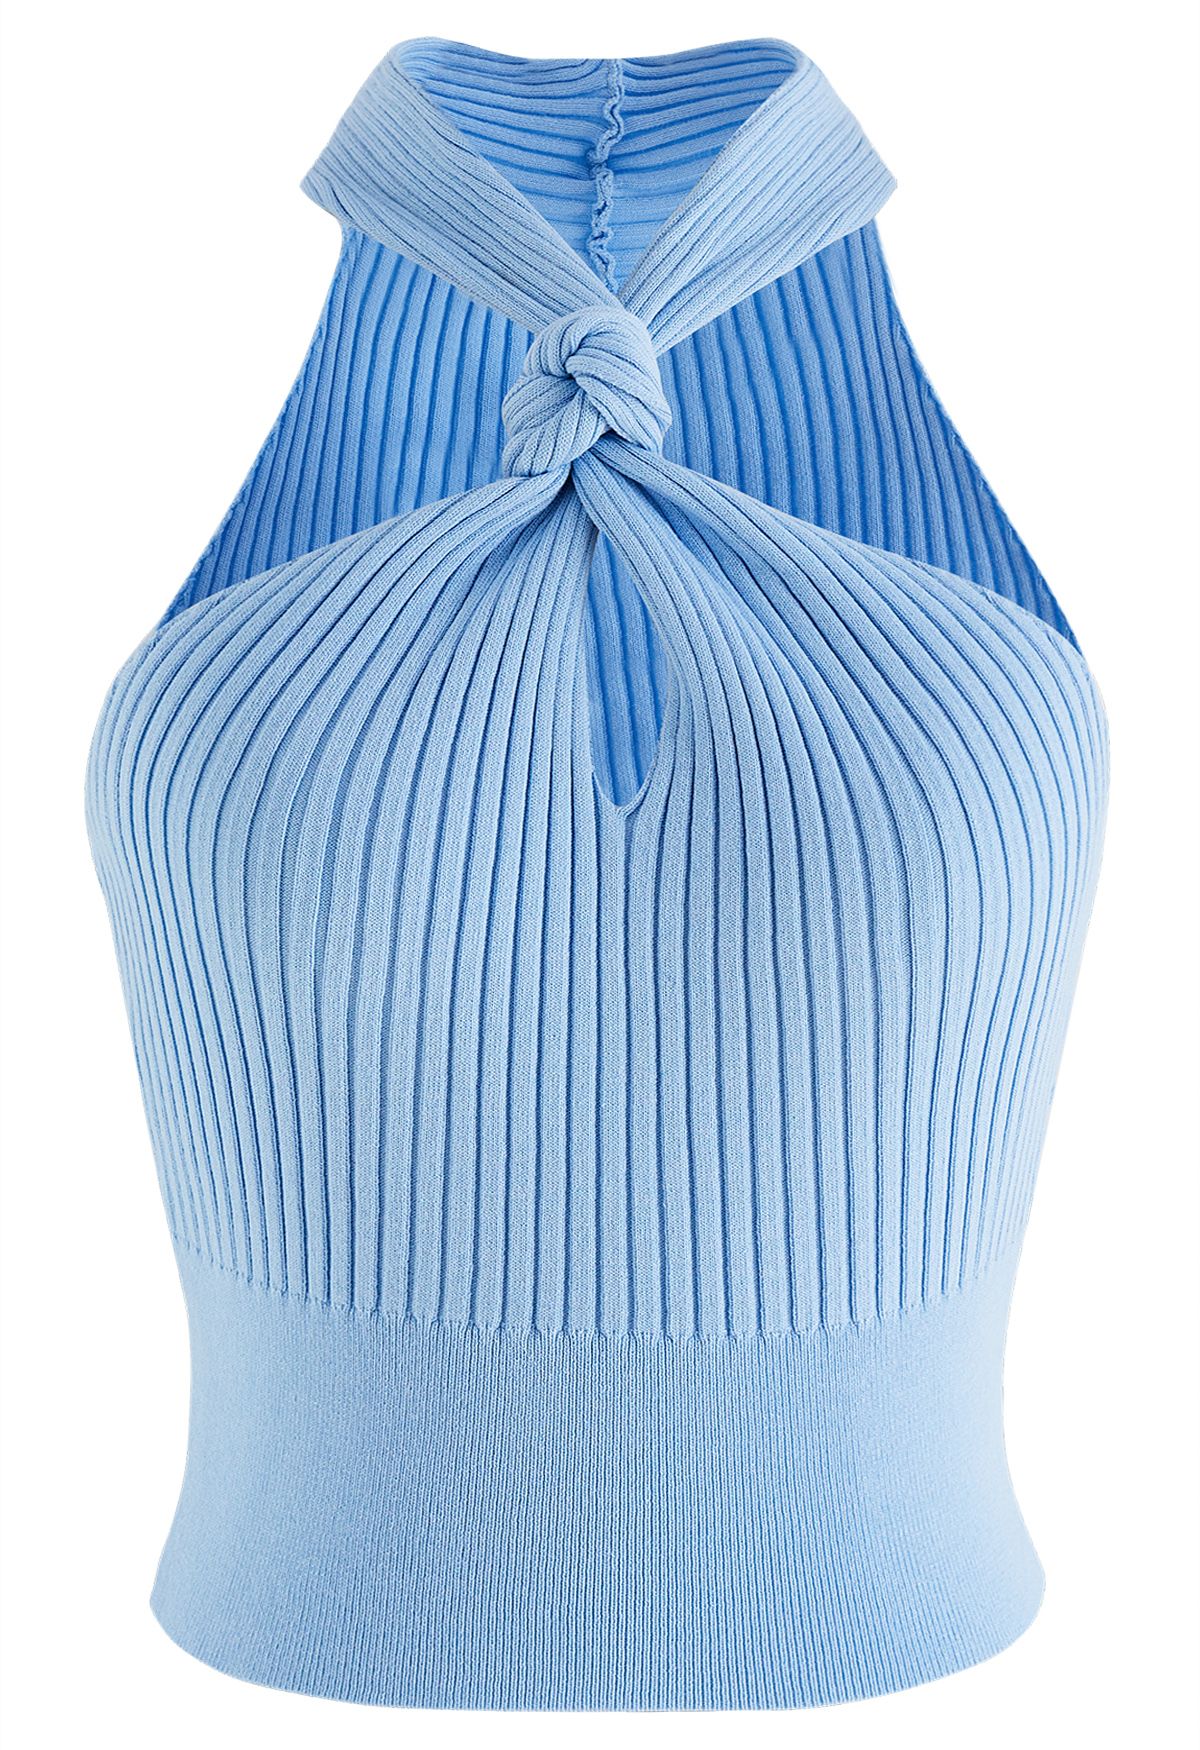 Editie fles waar dan ook Knot Halter Neck Knit Crop Top in Blue - Retro, Indie and Unique Fashion